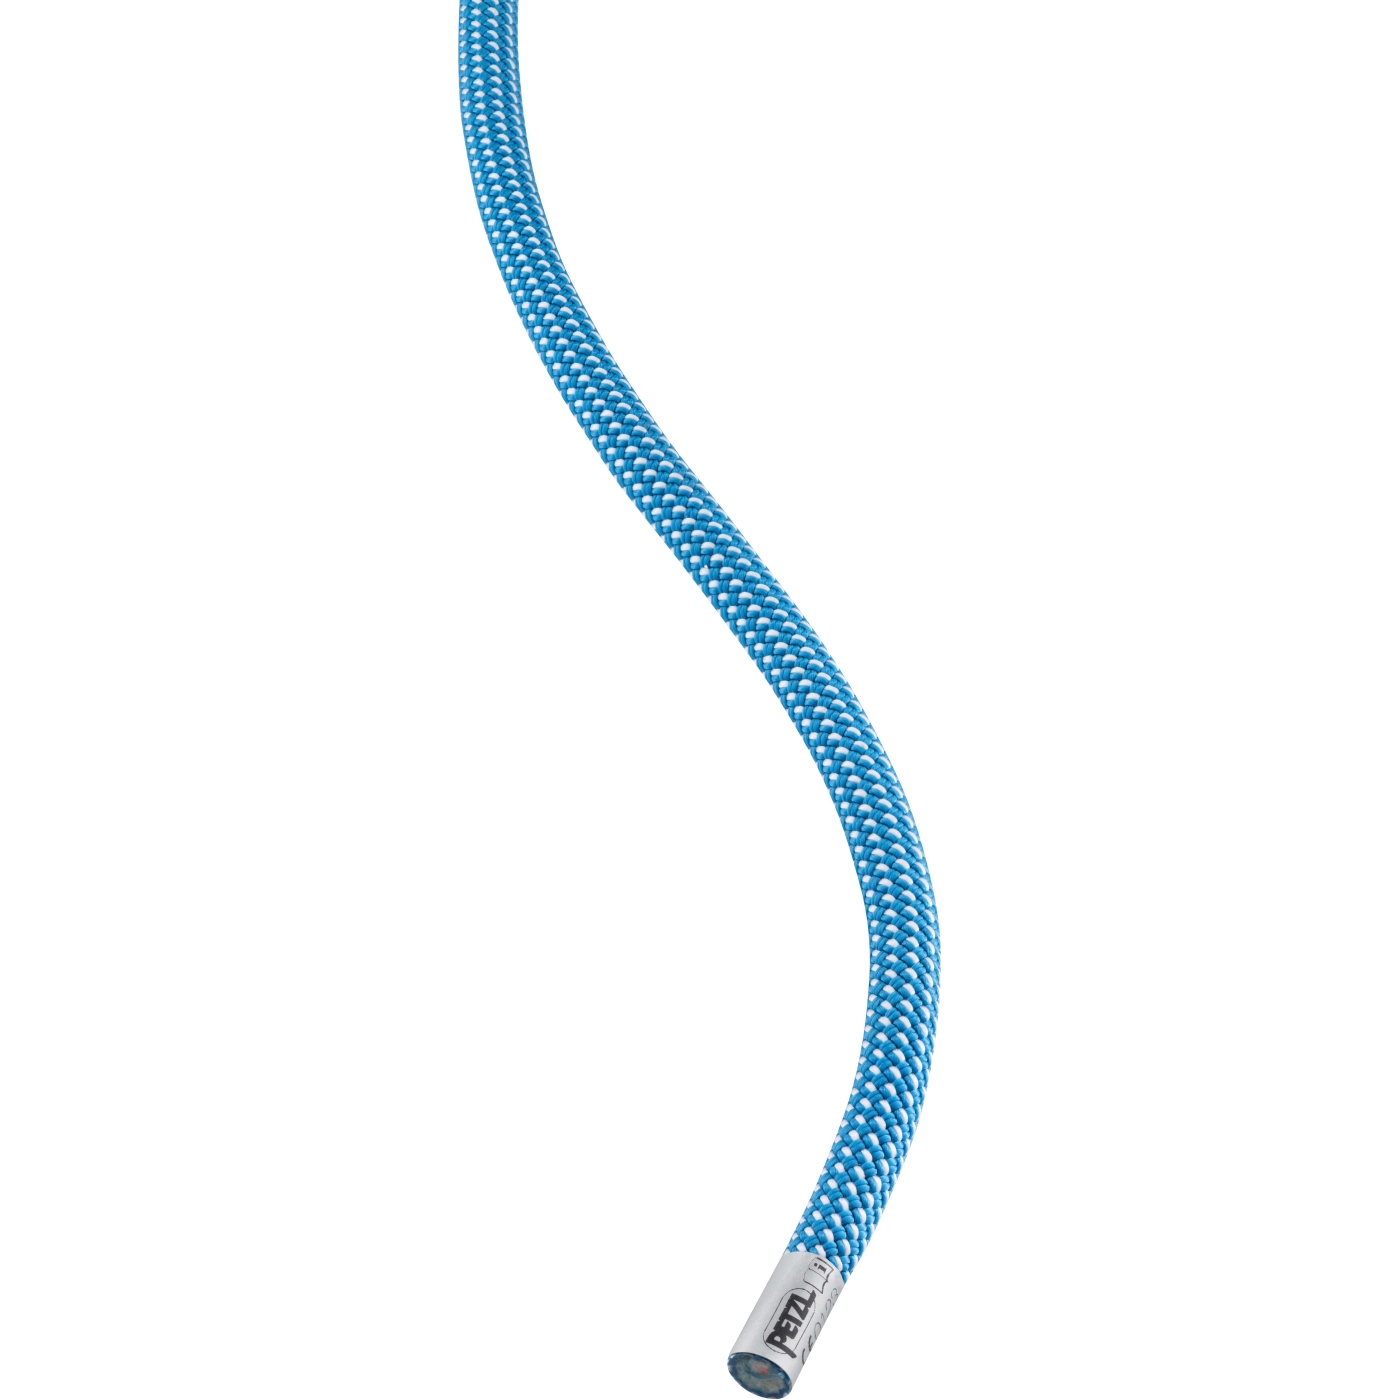 Productfoto van Petzl Arial 9.5mm Touw - 70m - blauw